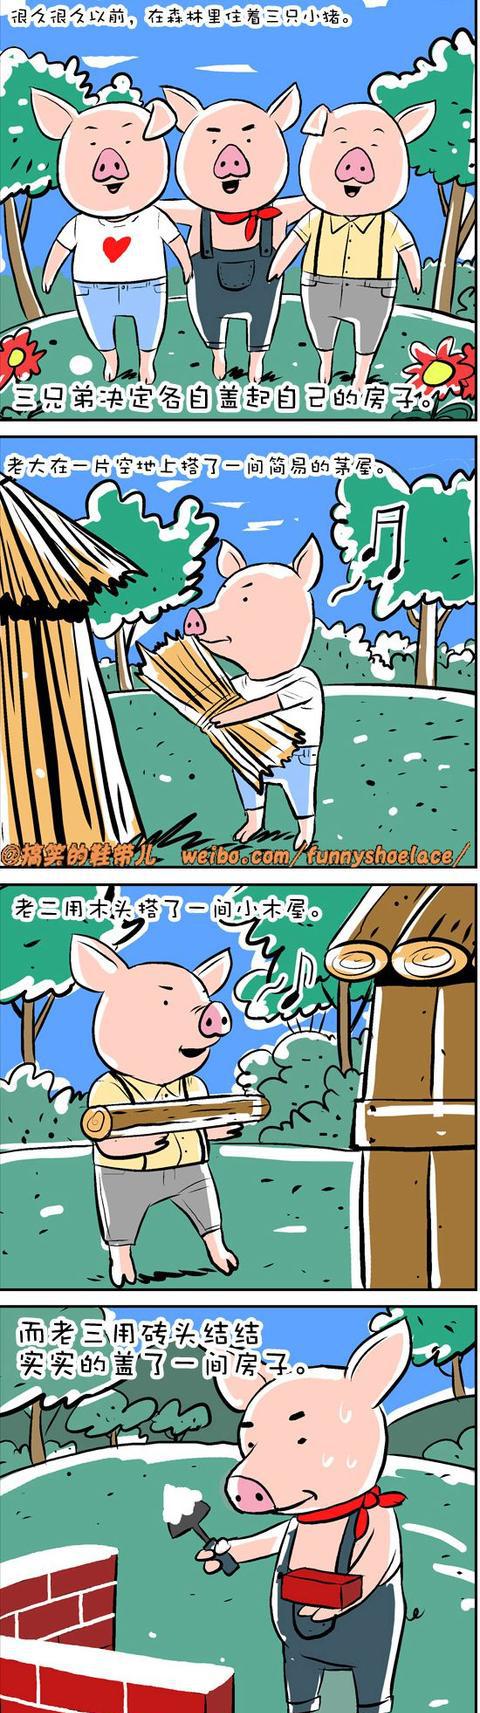 漫画:《三只小猪》新编